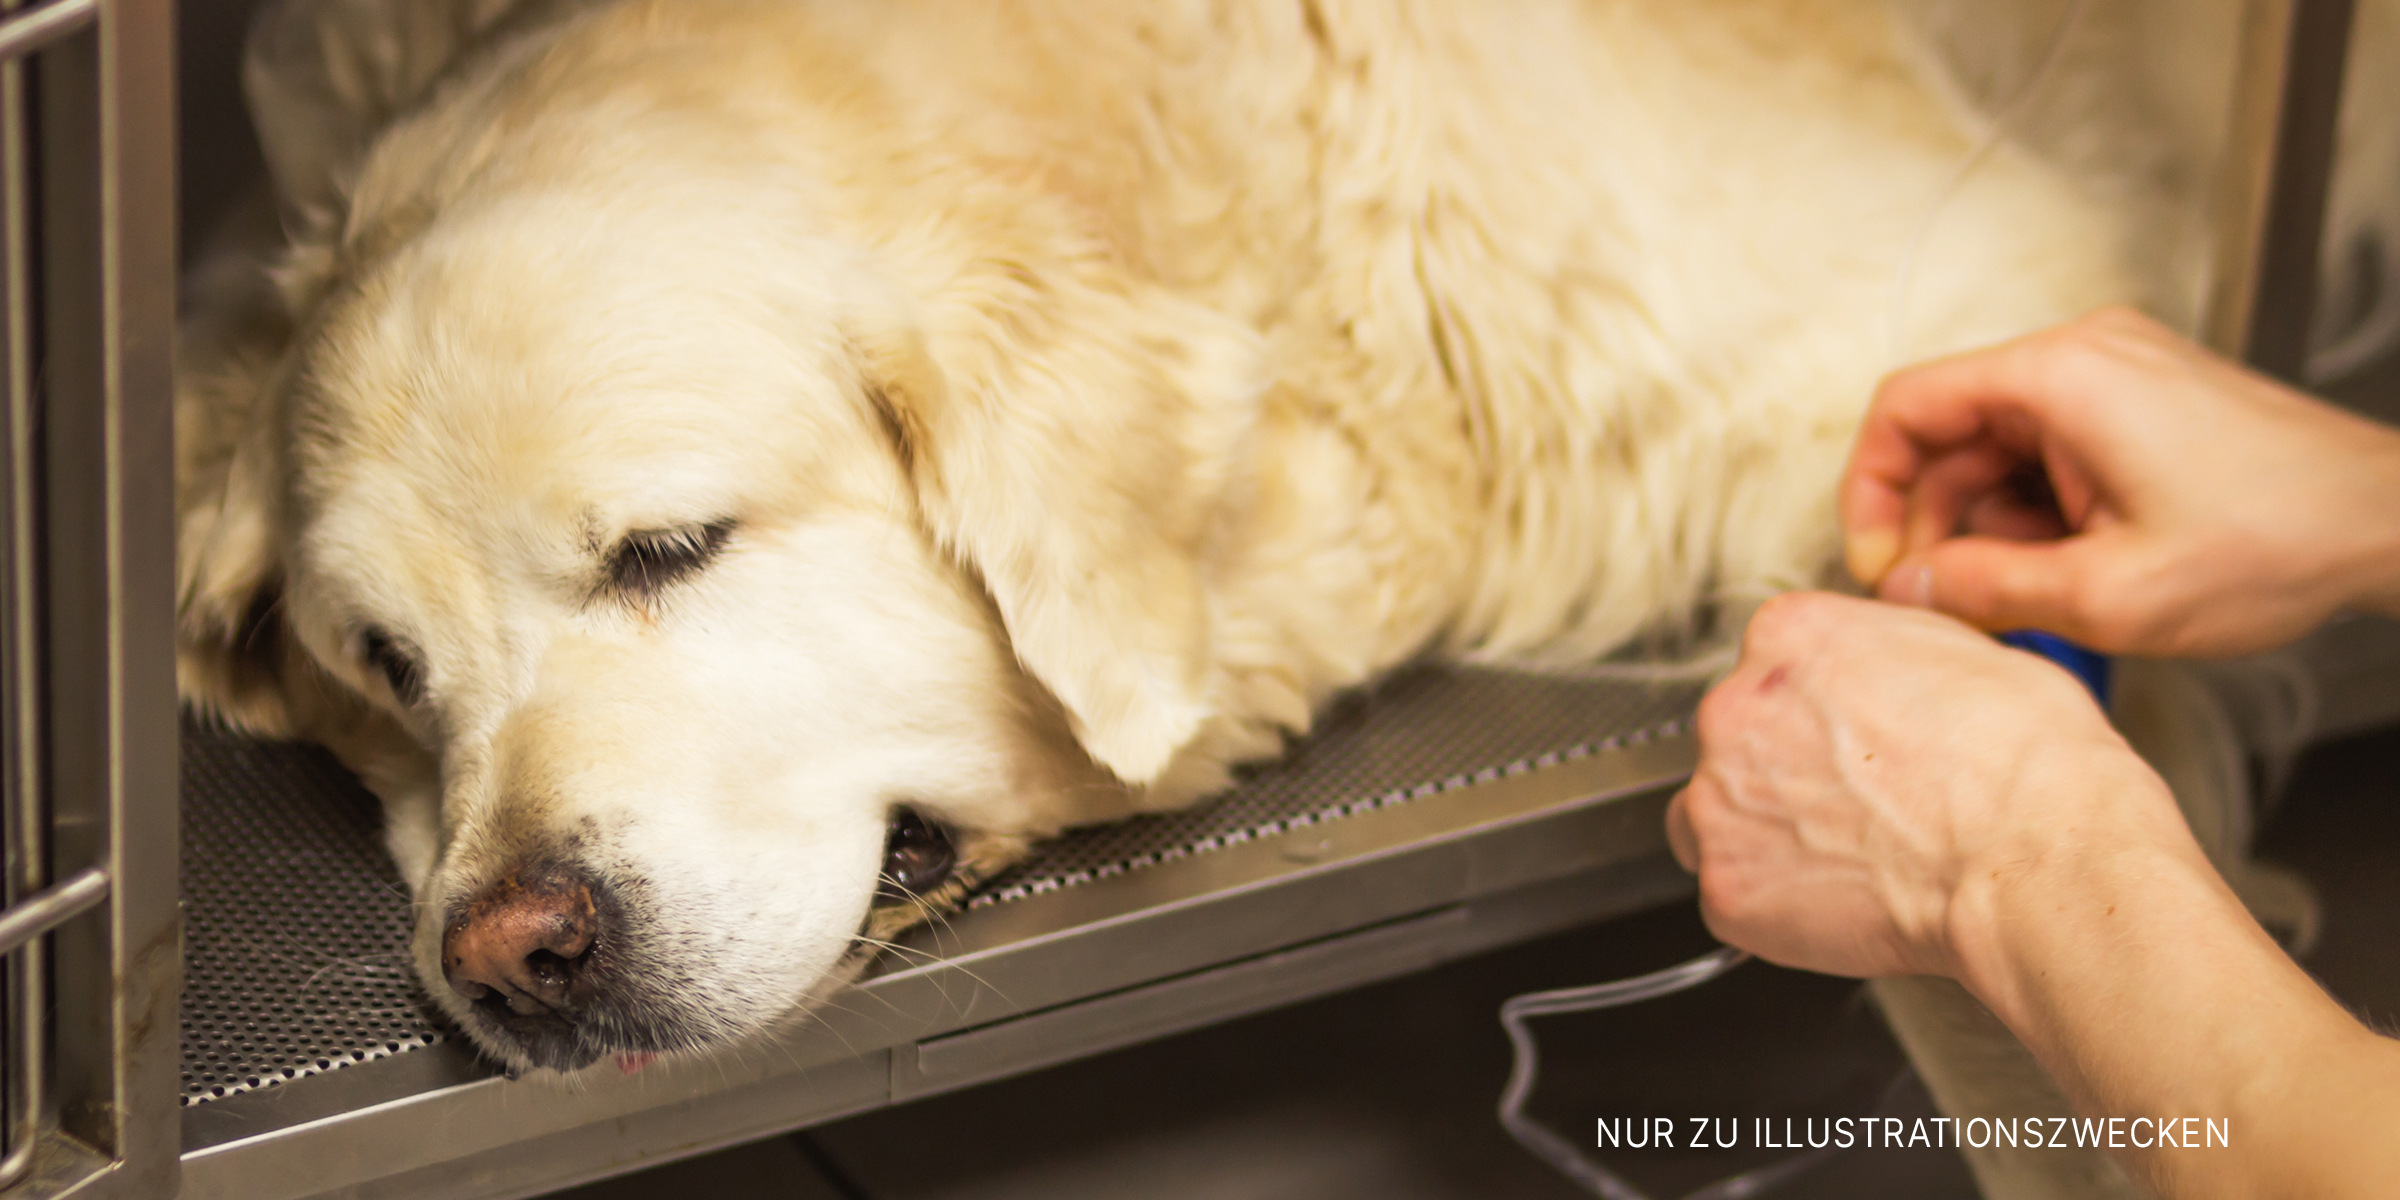 Ein kranker Hund wird mit einer Infusion behandelt | Quelle: Shutterstock